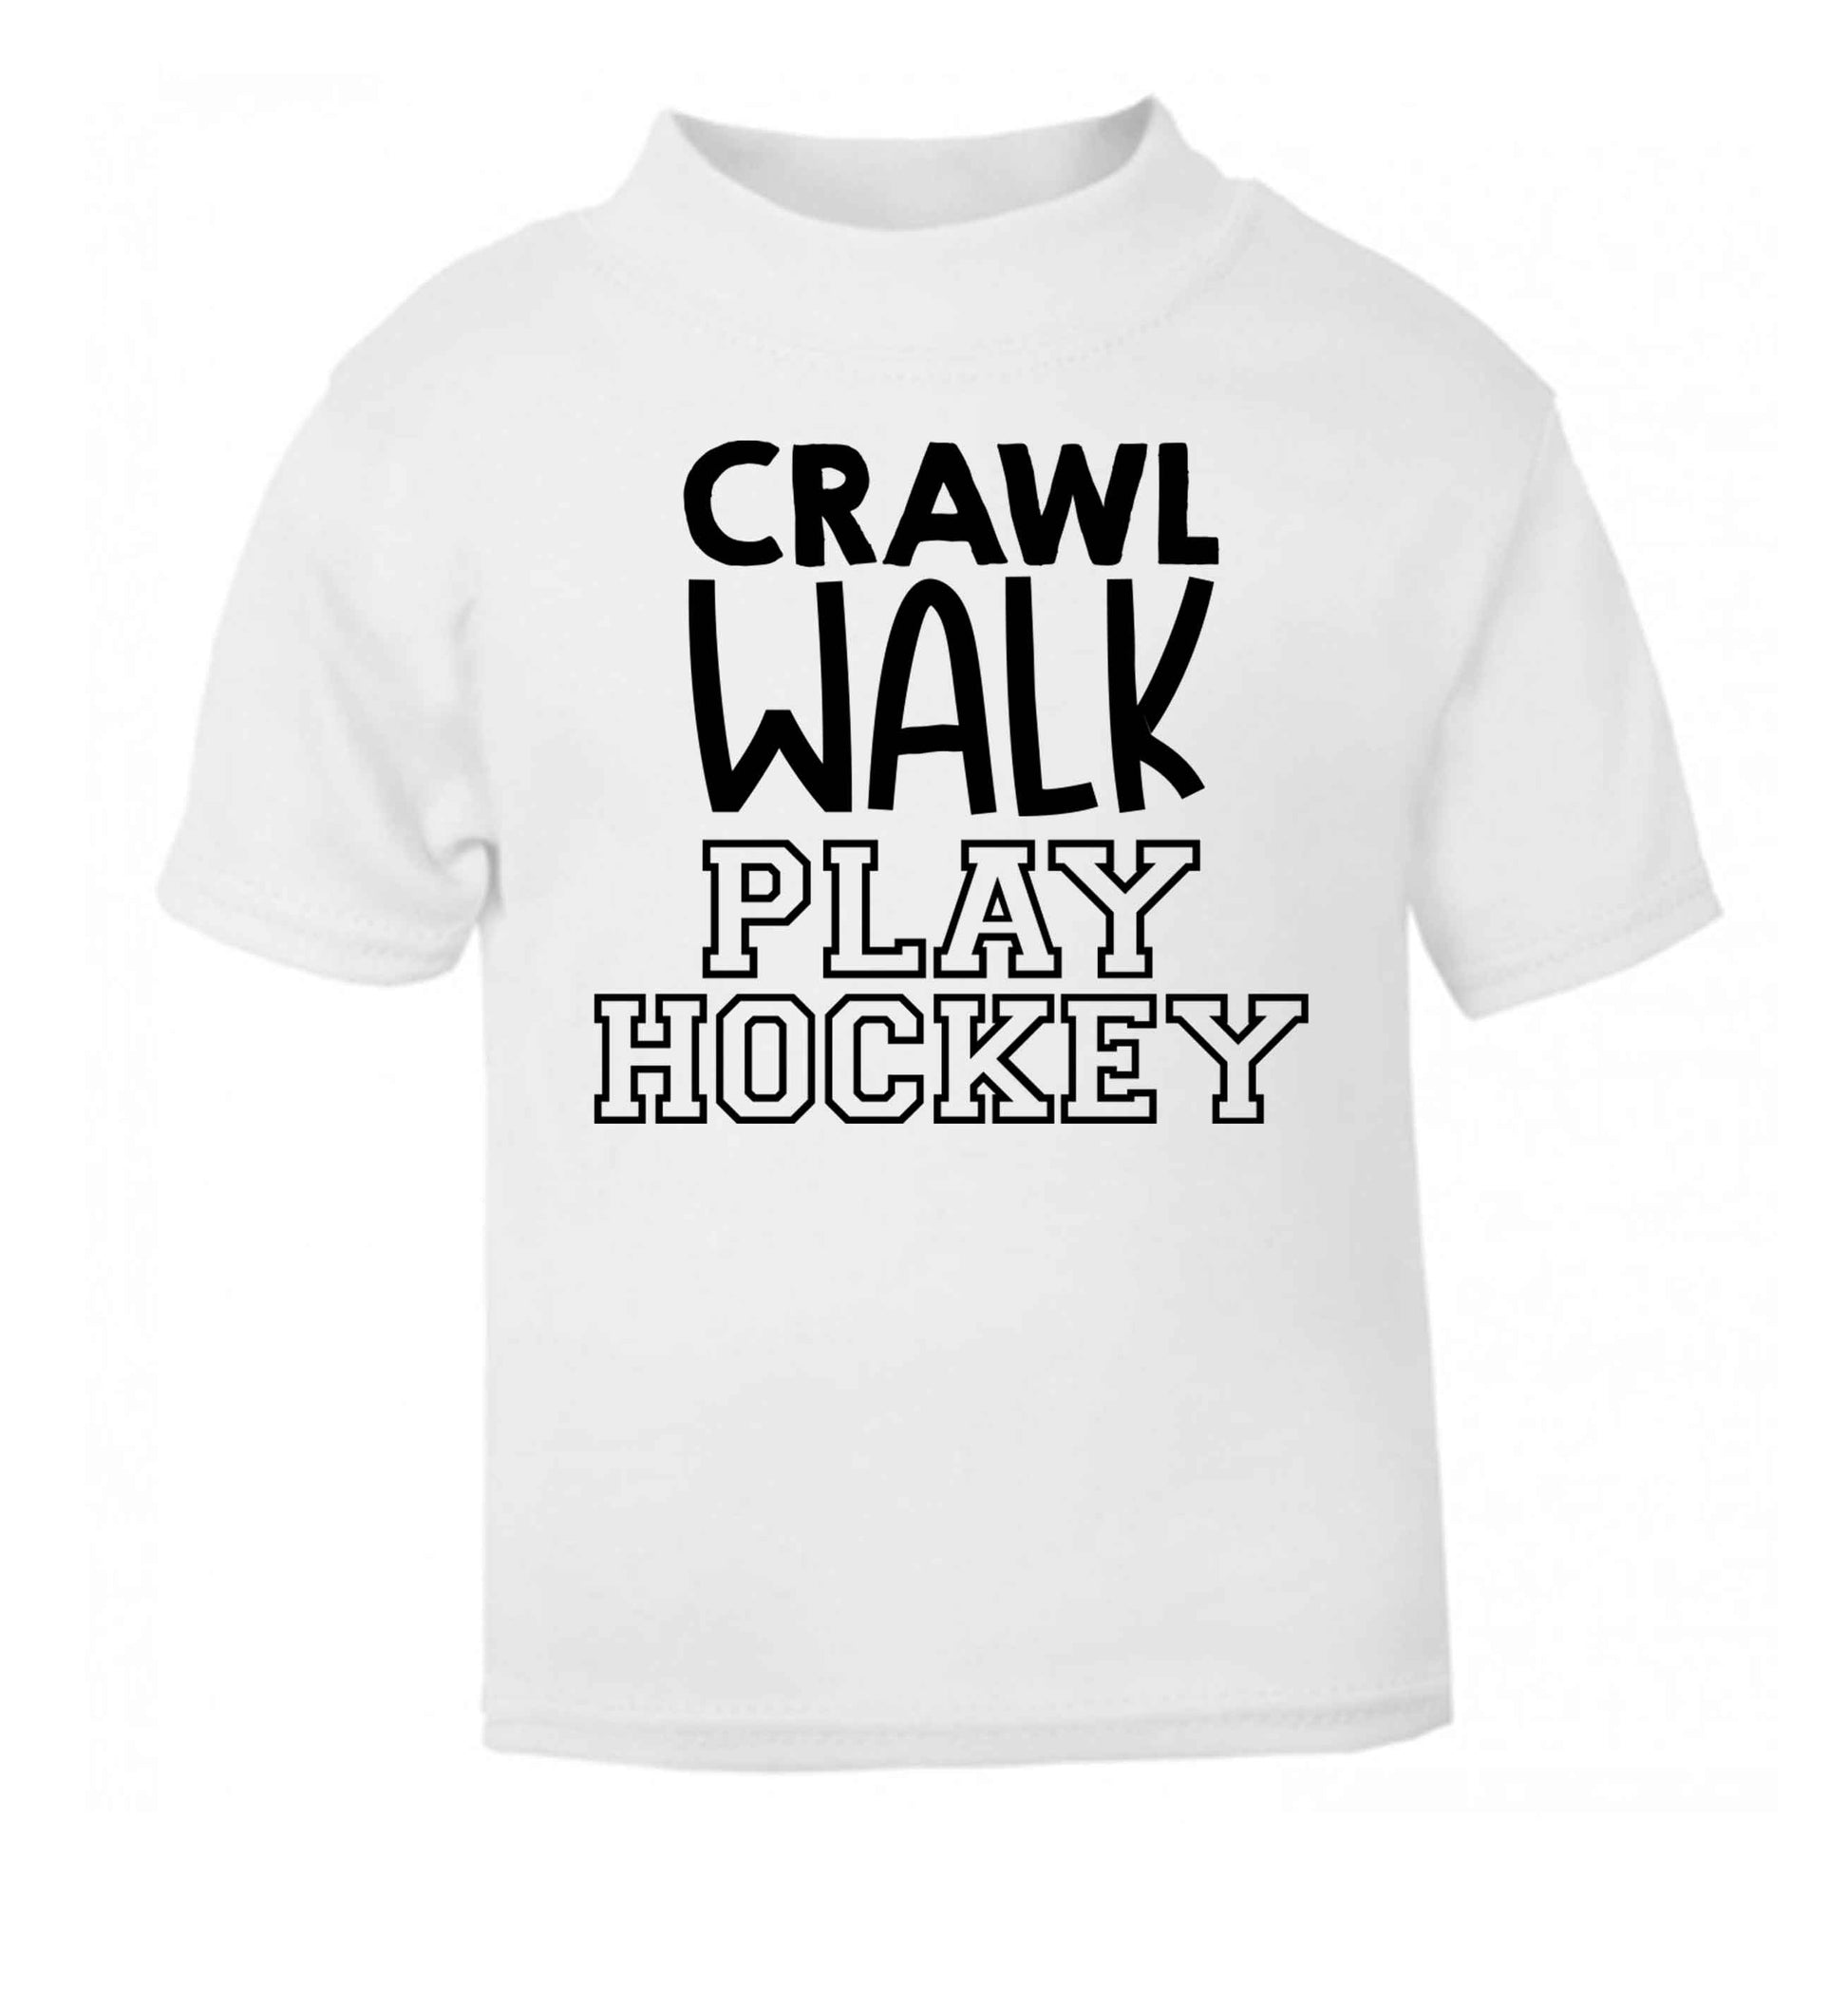 Crawl walk play hockey white Baby Toddler Tshirt 2 Years